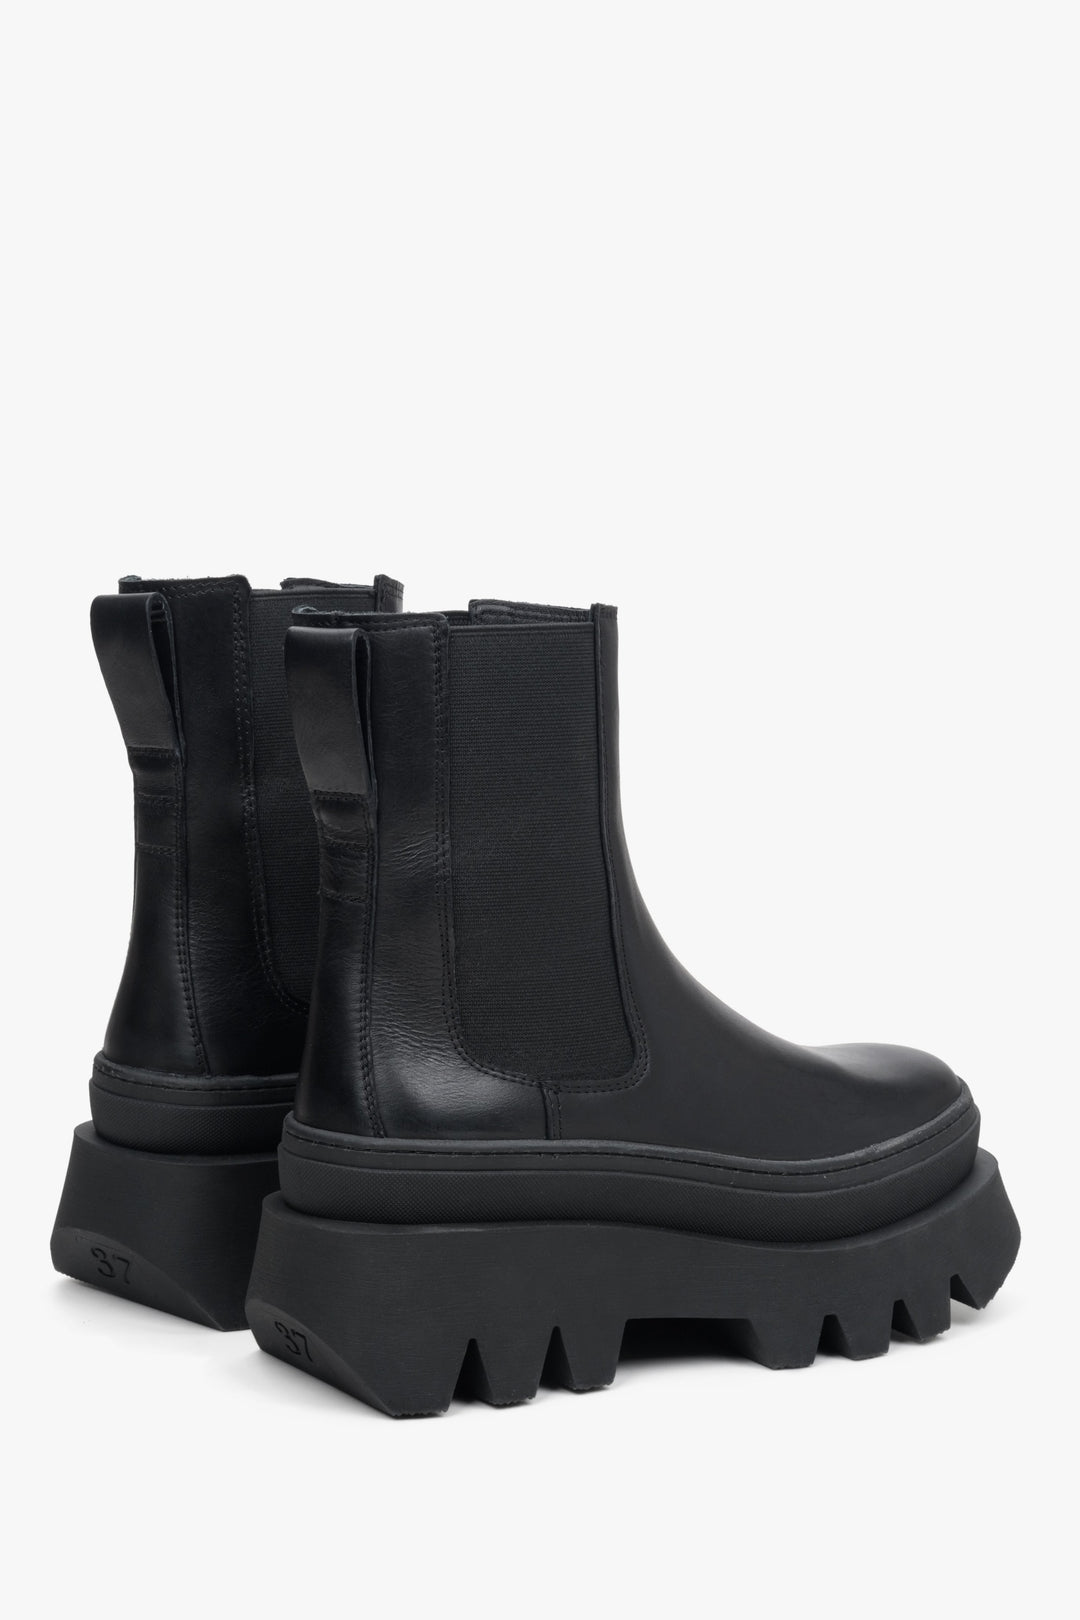 Czarne sztyblety dmaksie Estro na elastycznej podeszwie - profil butów.